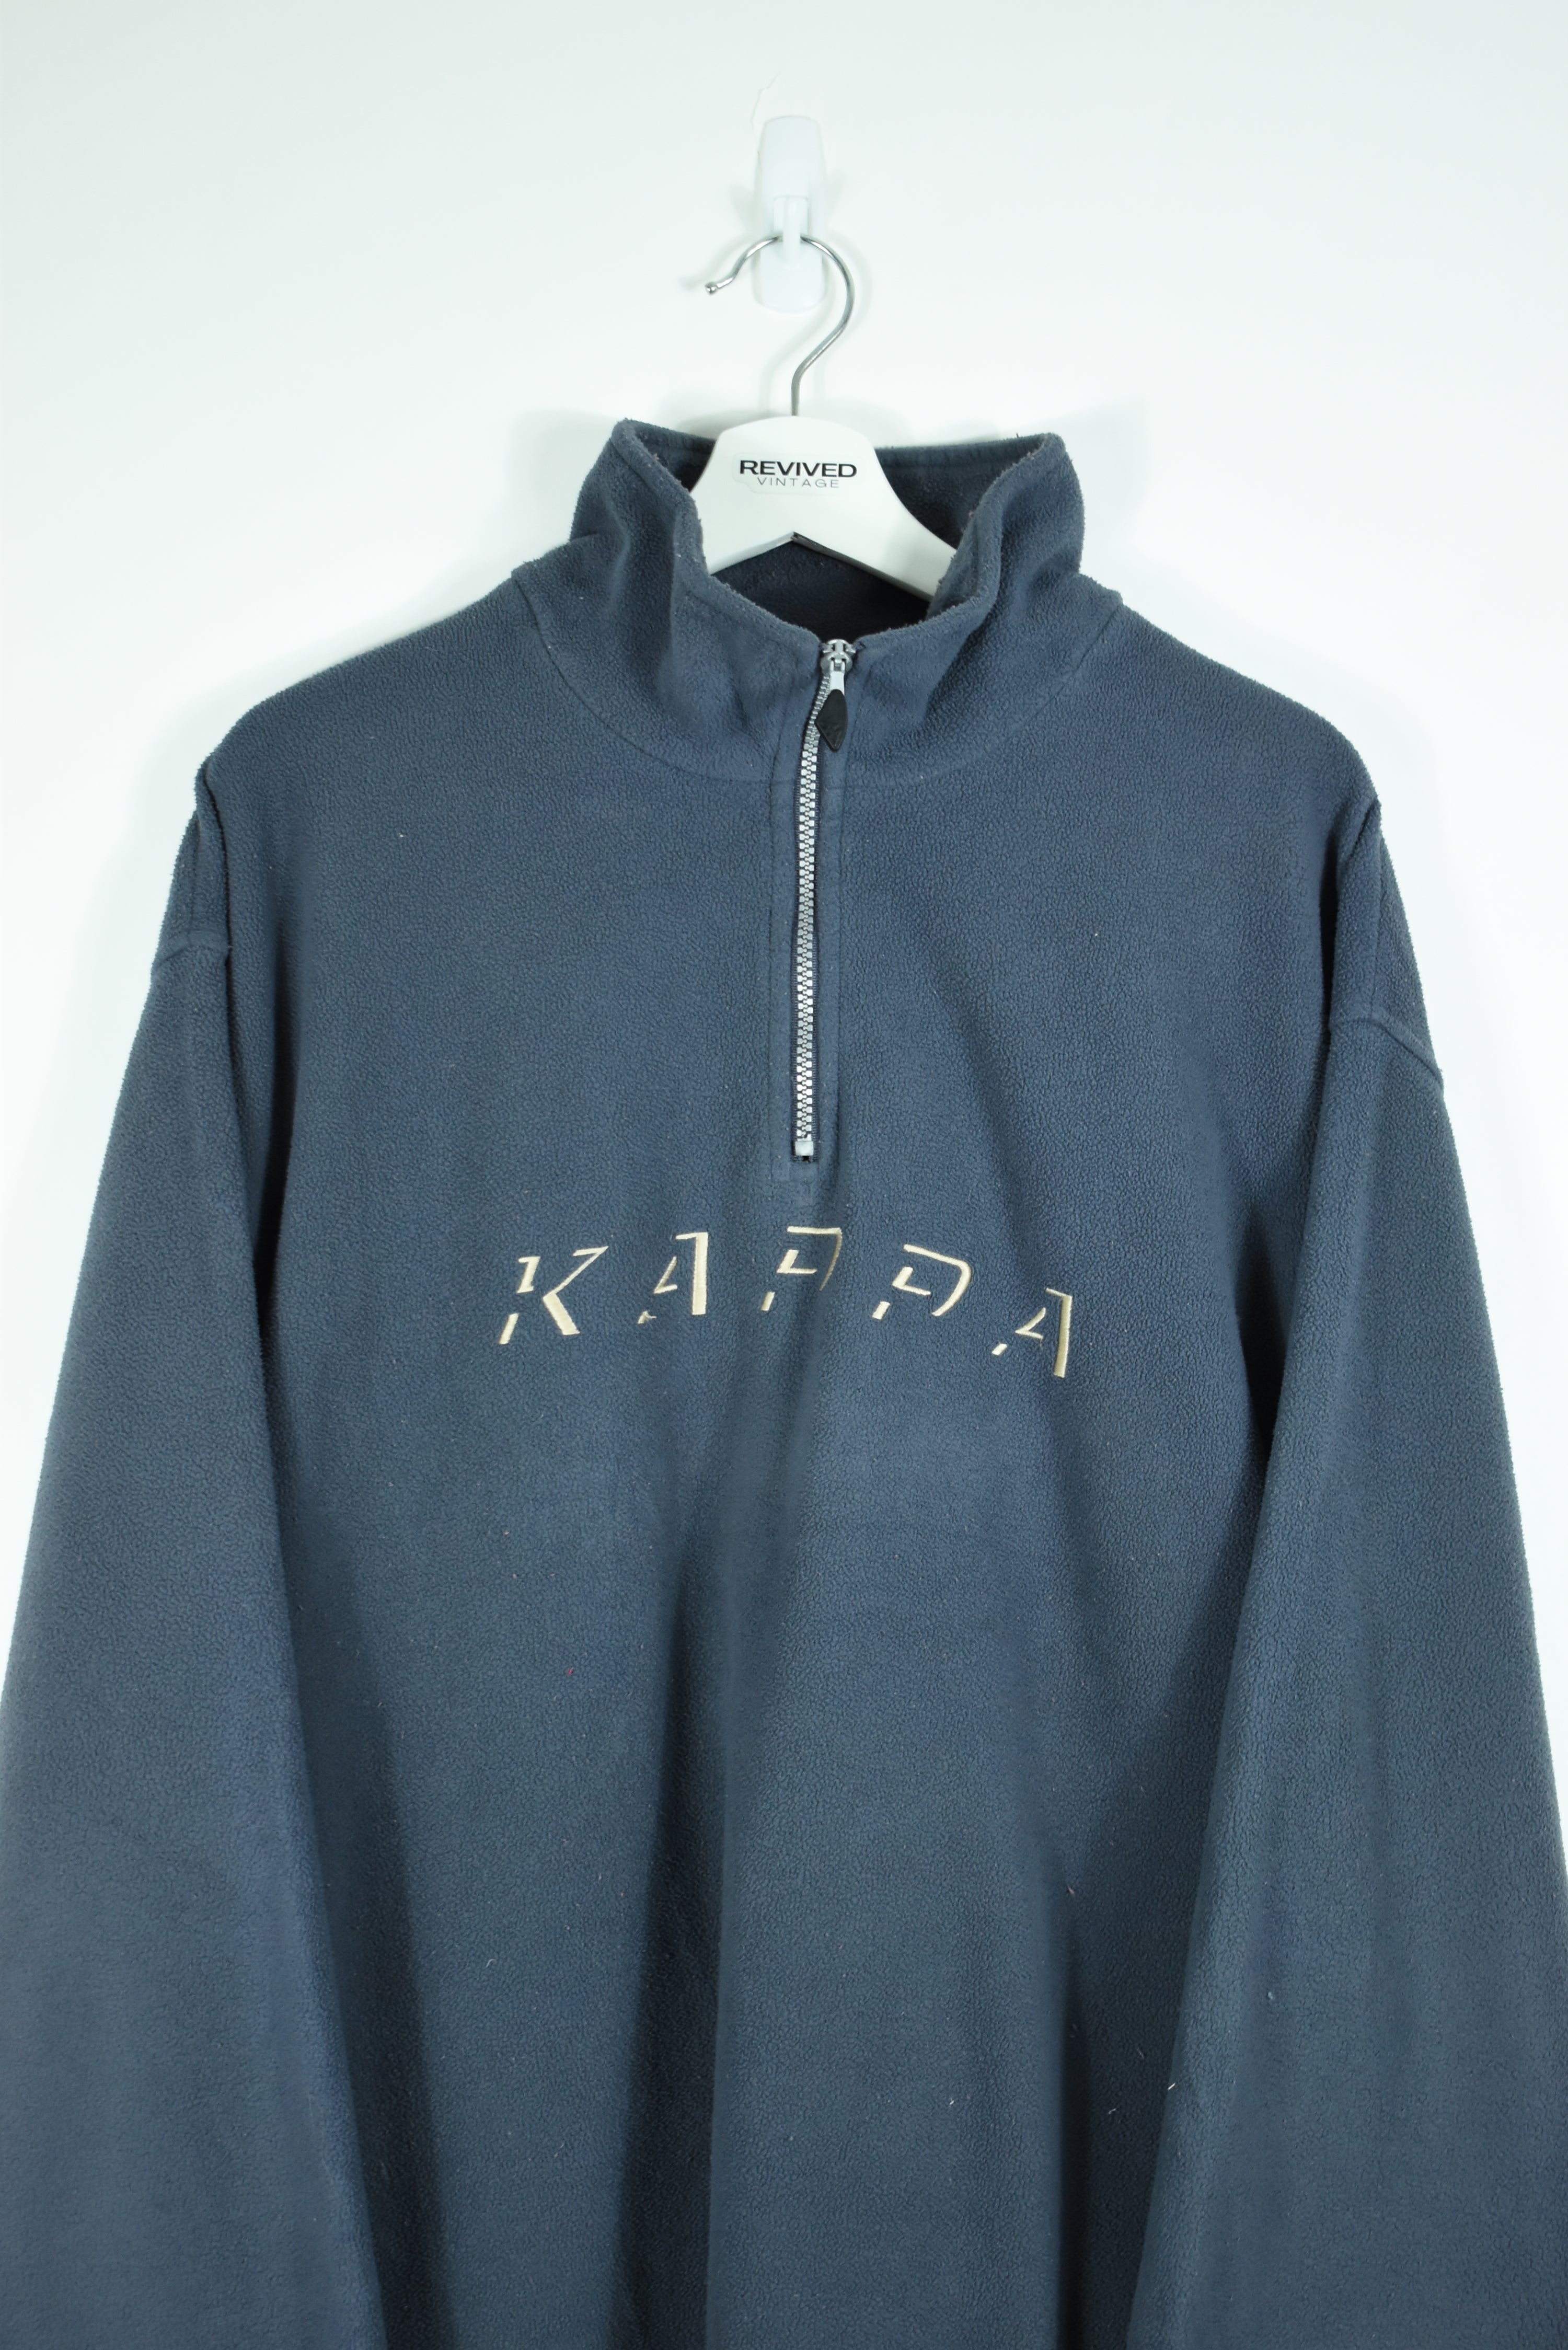 Vintage Kappa Embroidery Fleece 1/4 Zip Xlarge